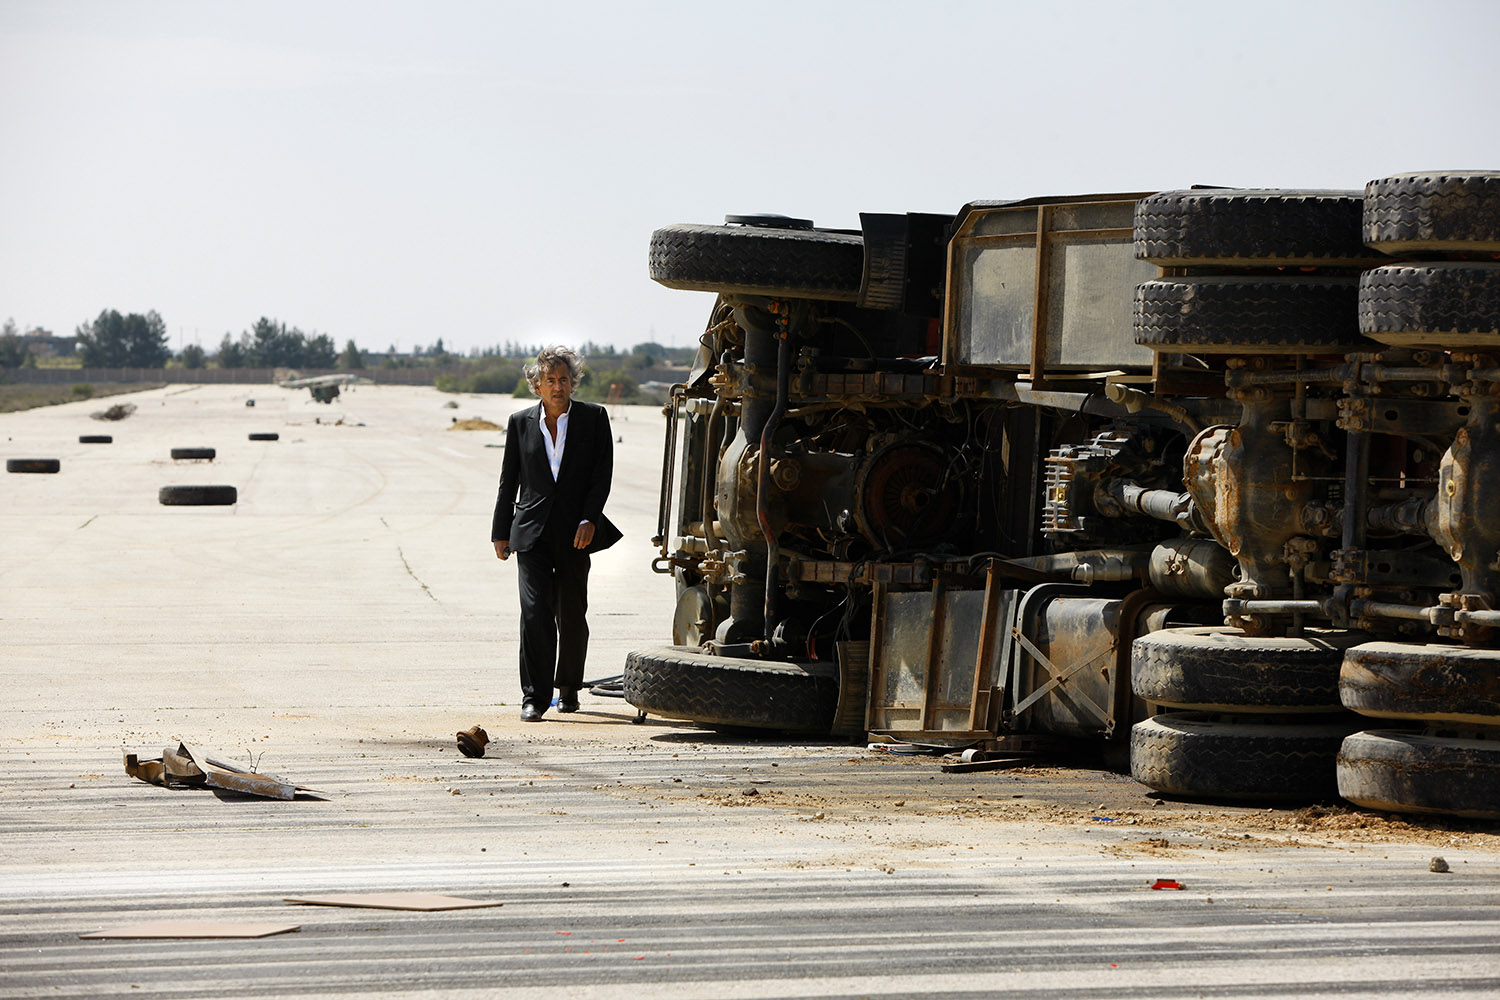 Bernard-Henri Lévy à Labrak, sur la piste de l'aéroport, il marche près d'un camion renversé sur le côté.